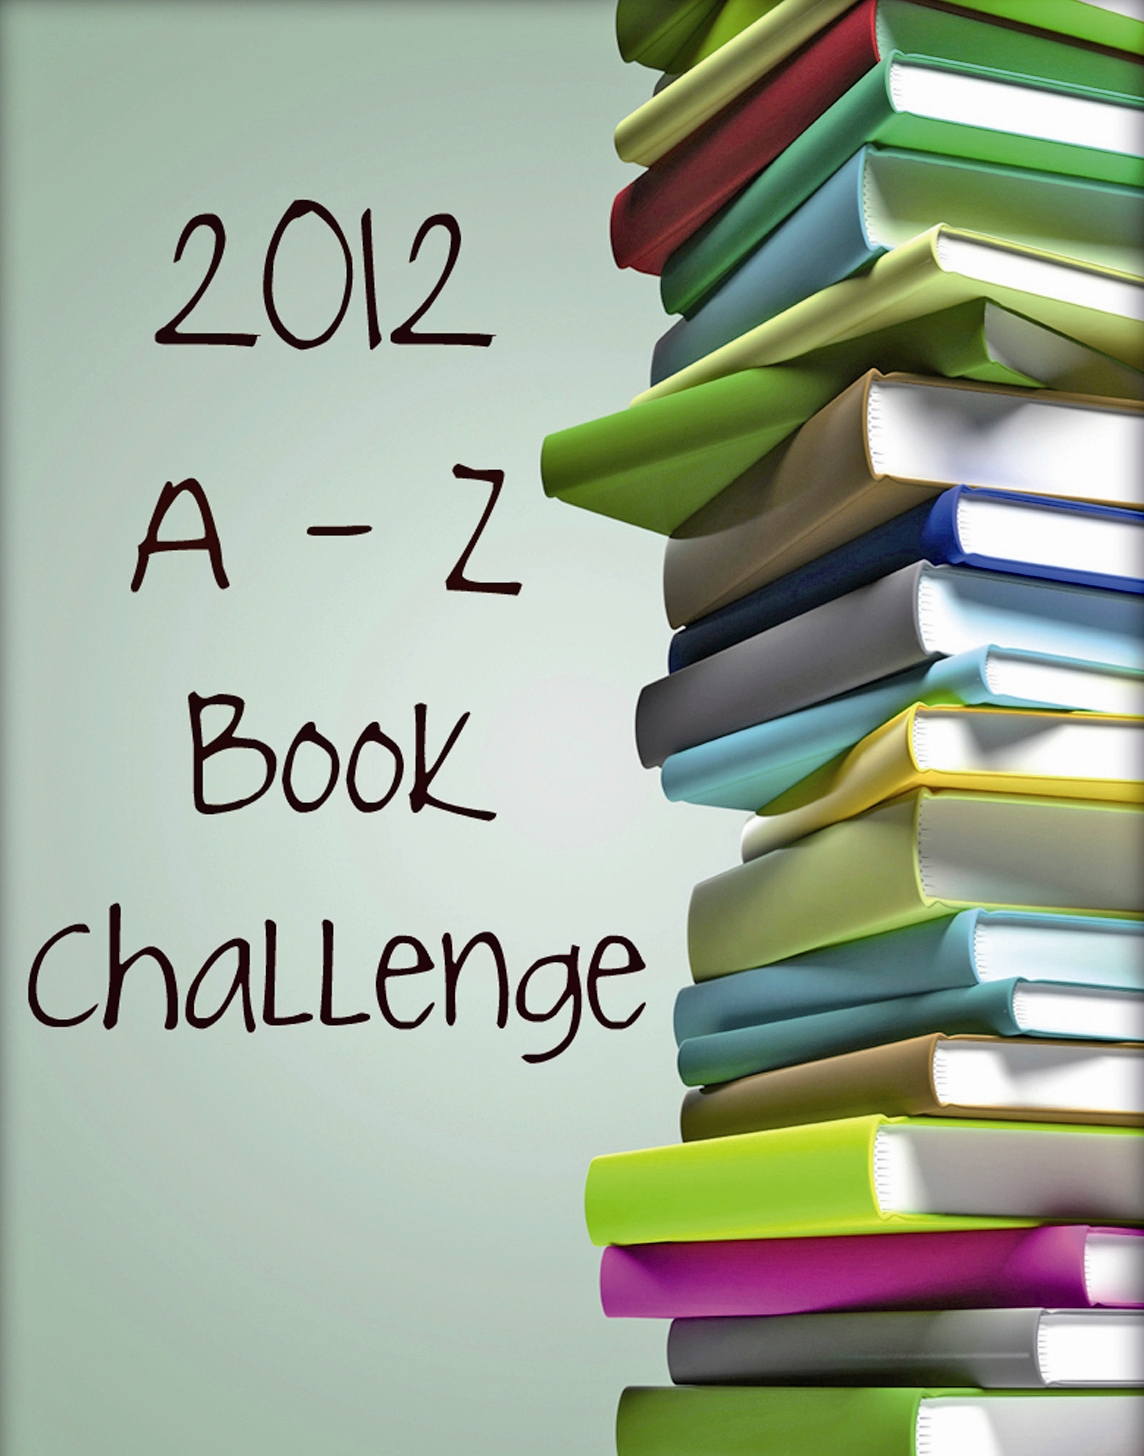 برترین کتاب های سال 2012